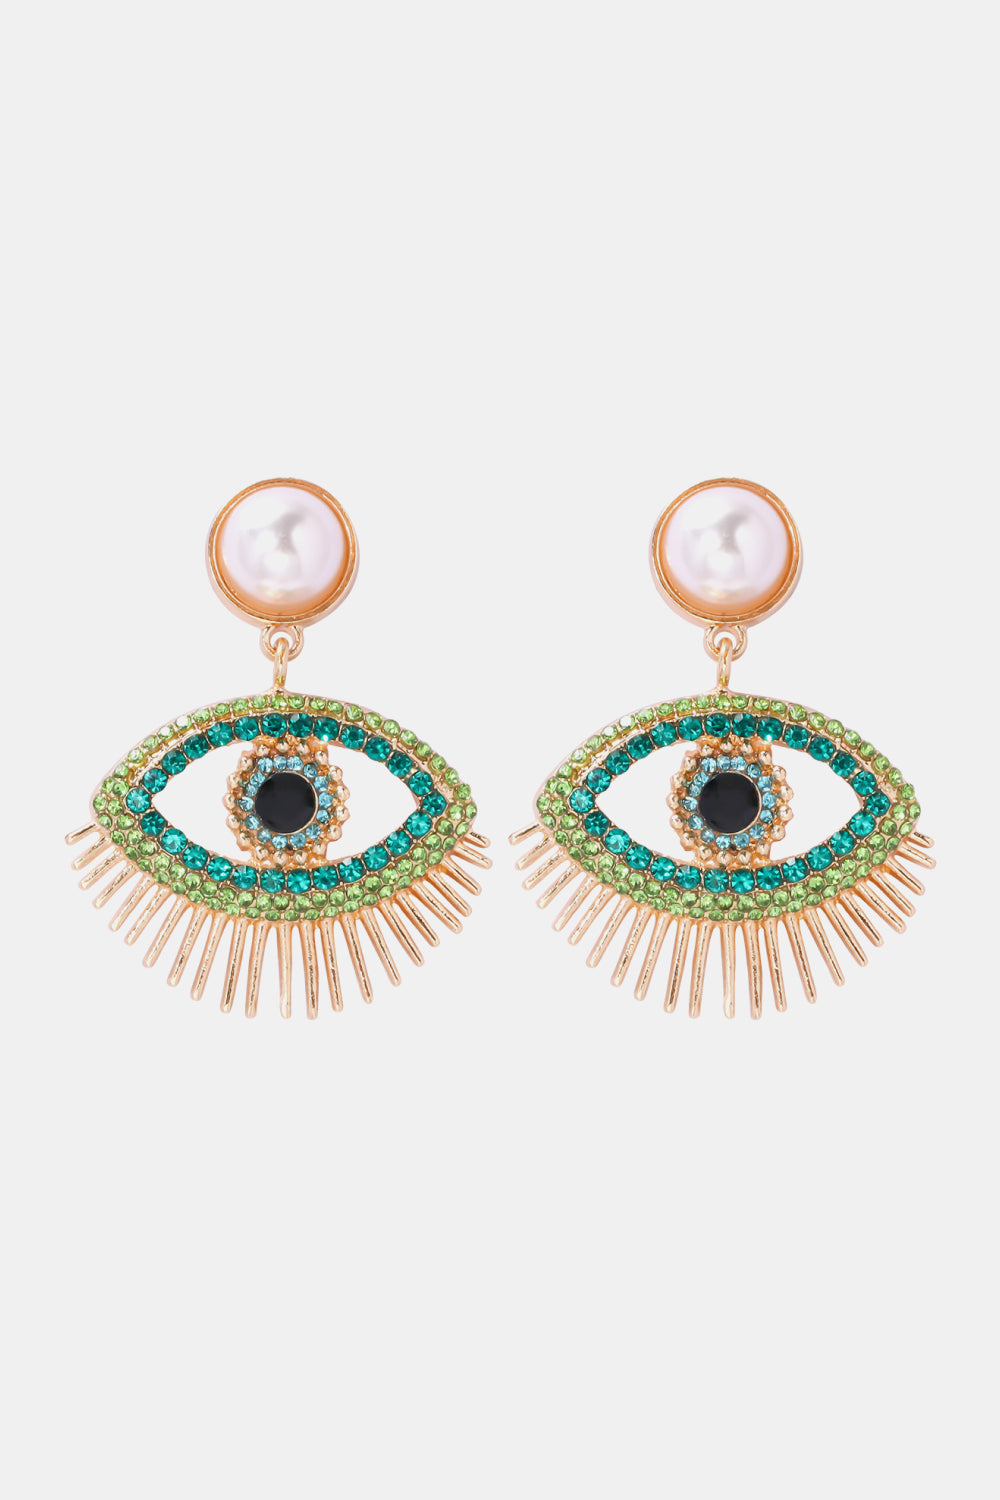 Evil Eye Shape Rhinestone Zinc Alloy Synthetic Dangle Earrings - Light Green / One Size - Women’s Jewelry - Earrings